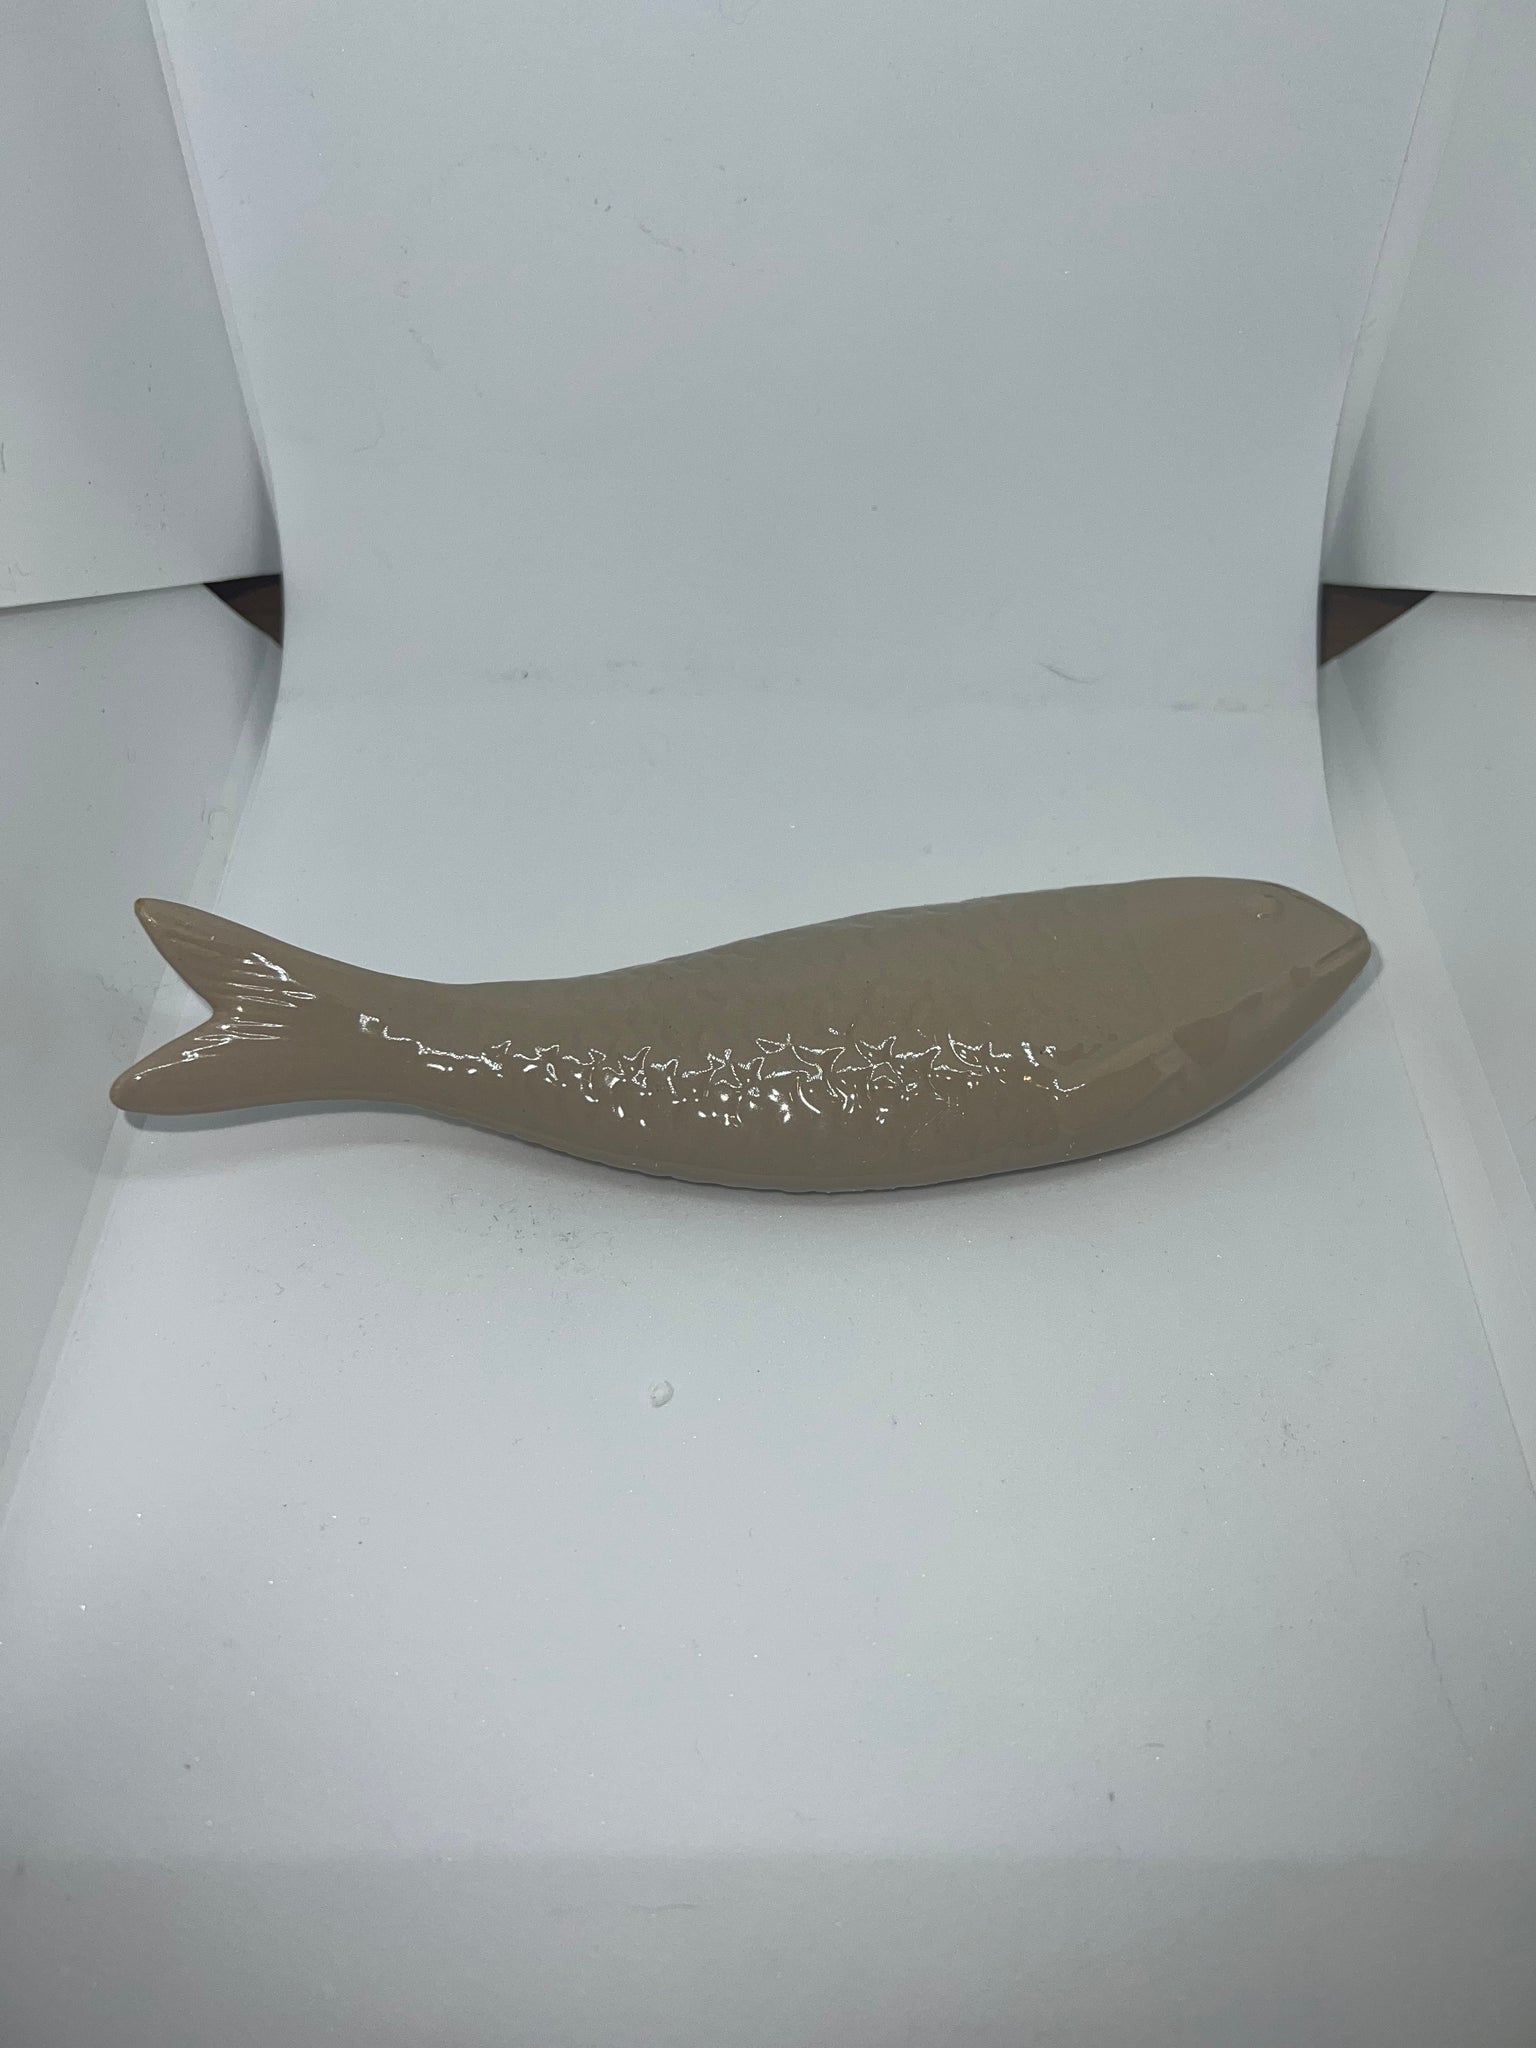 Sculpted Stoneware Fish Decor